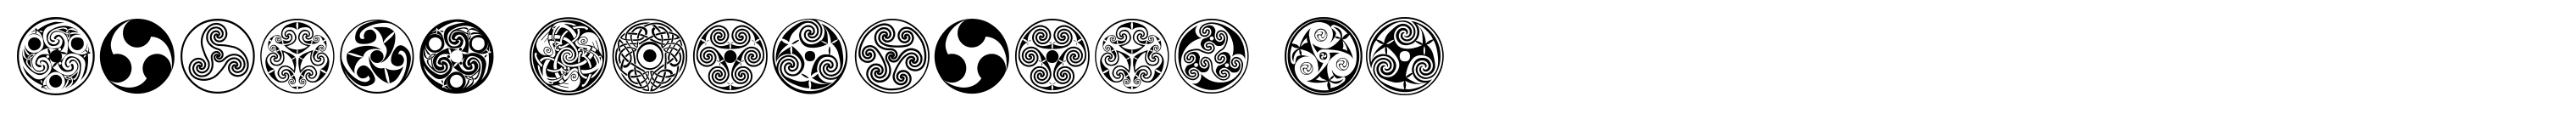 Celtic Ornaments BA